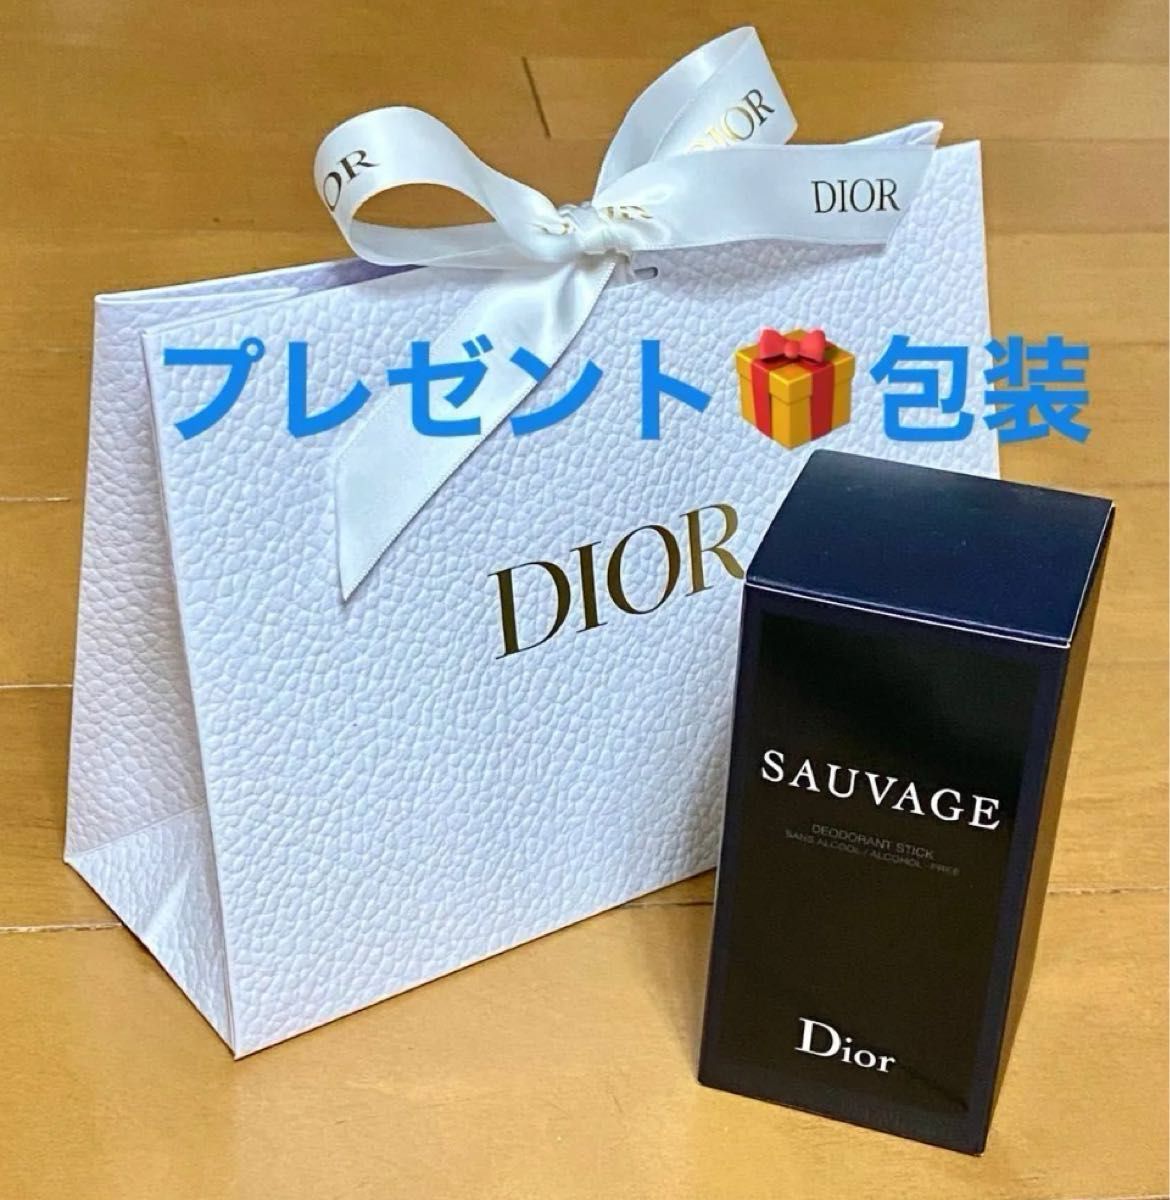 【プレゼント包装】ディオール ソヴァージュ ボディスティック 75g 練り香水 箱有り ギフトボックス付き